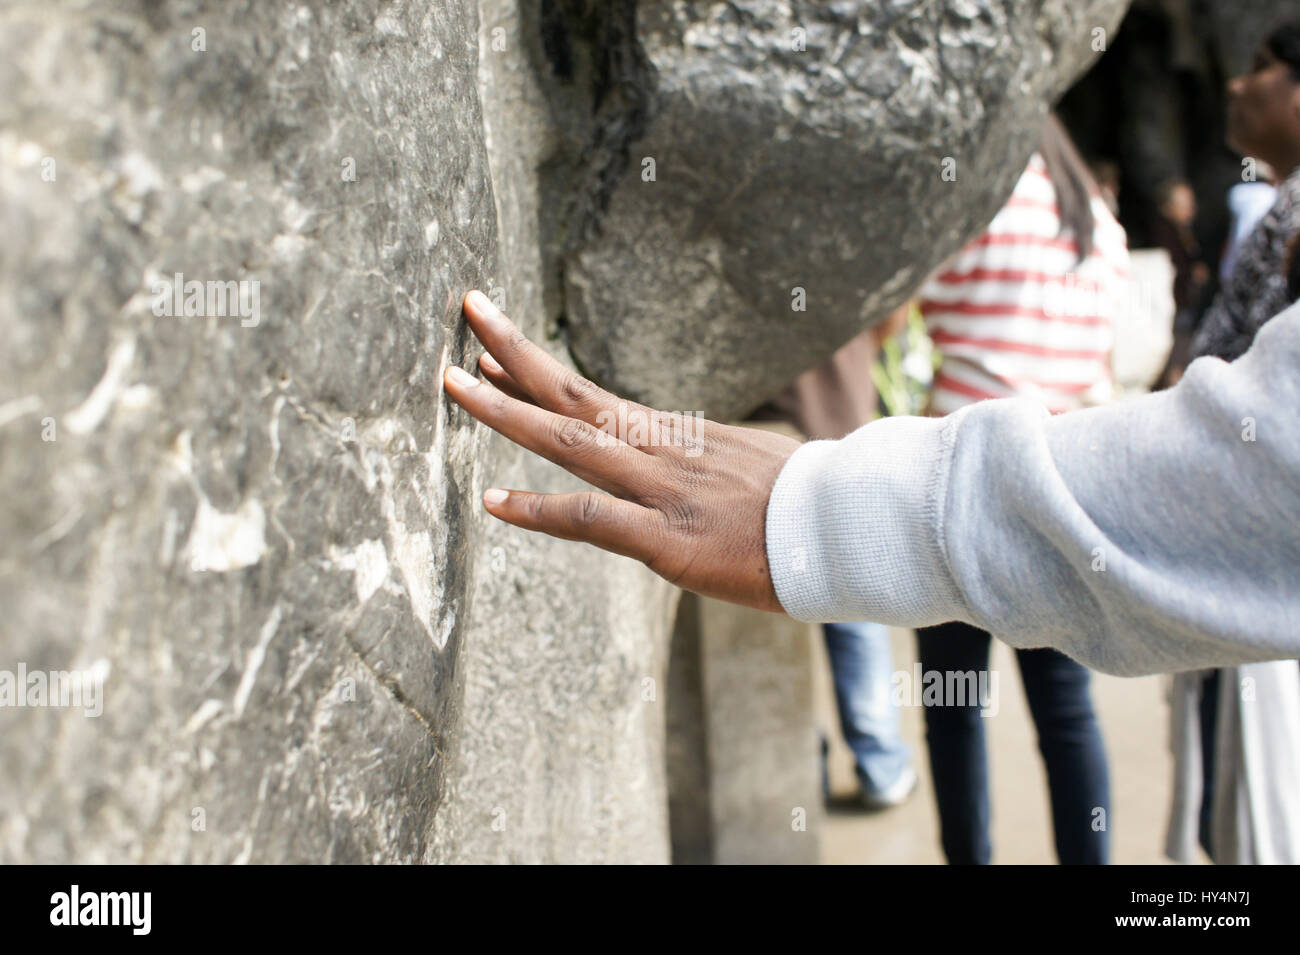 Un pèlerin touche le mur de pierre de la grotte de Massabielle, à Lourdes, France, la visite d'un printemps que saint est réputé pour avoir des propriétés de guérison Banque D'Images